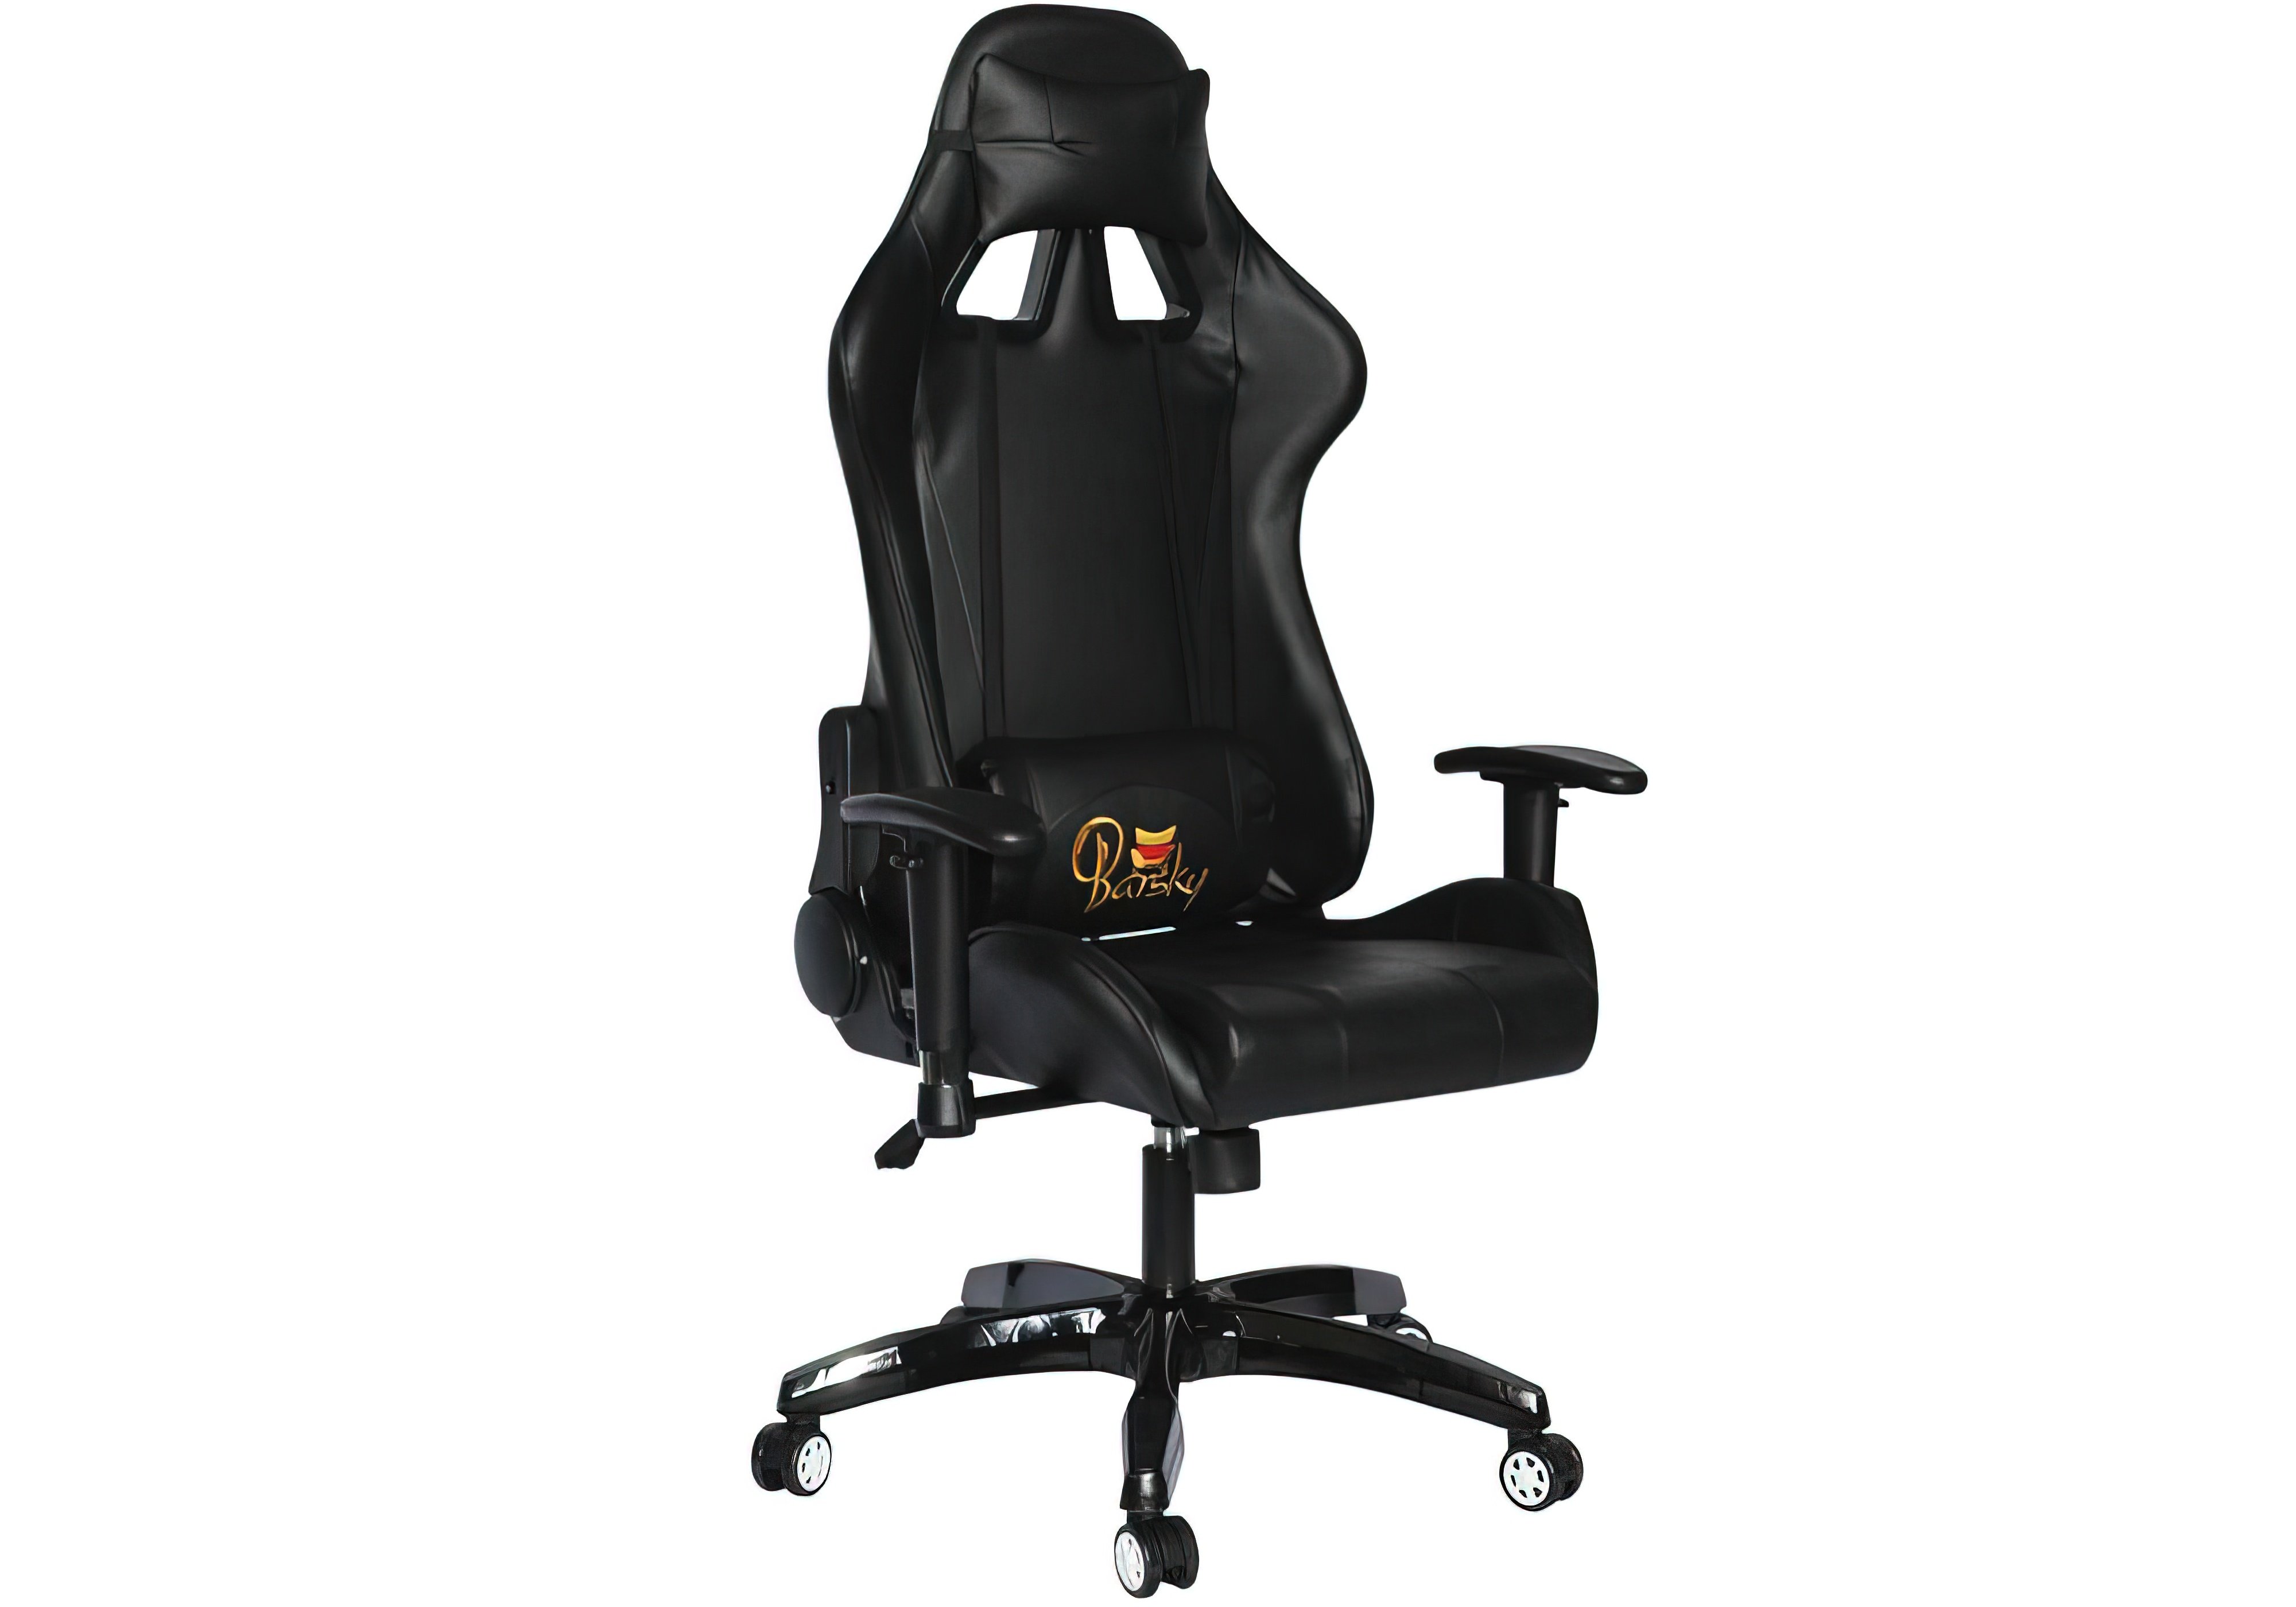  Купить Игровые и геймерские кресла Кресло "Sportdrive Game" Barsky